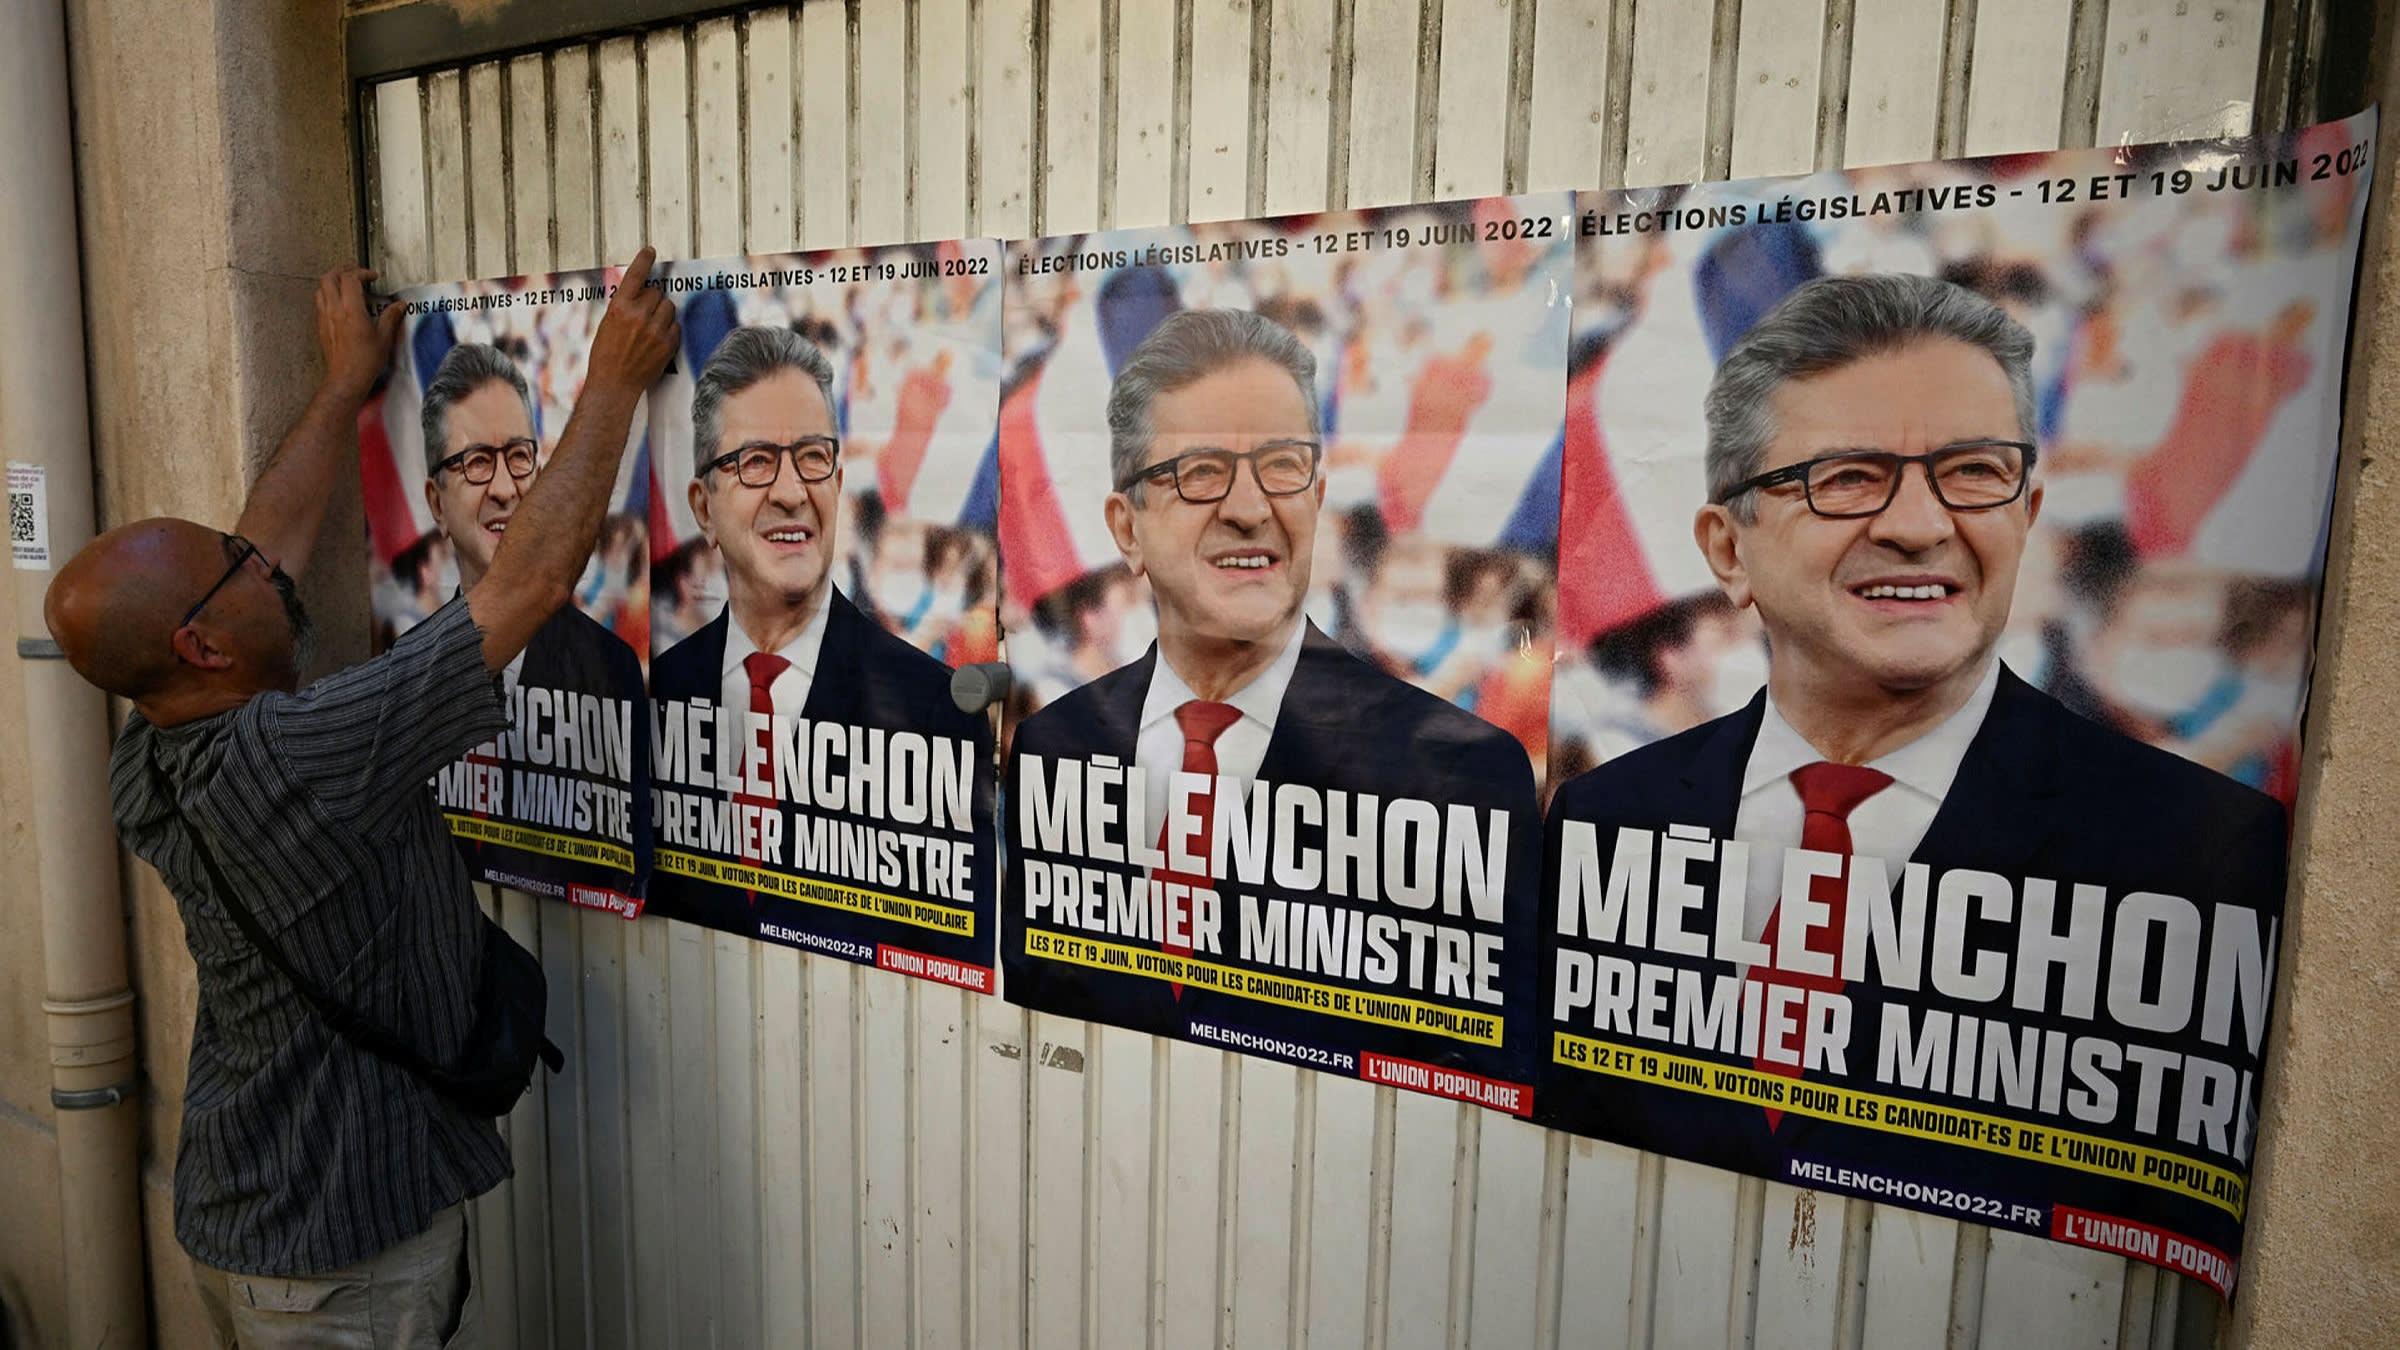 Carteles electorales proponiendo al izquierdista Jean-Luc Mélanchon como primer ministro de Francia. Foto: AP.